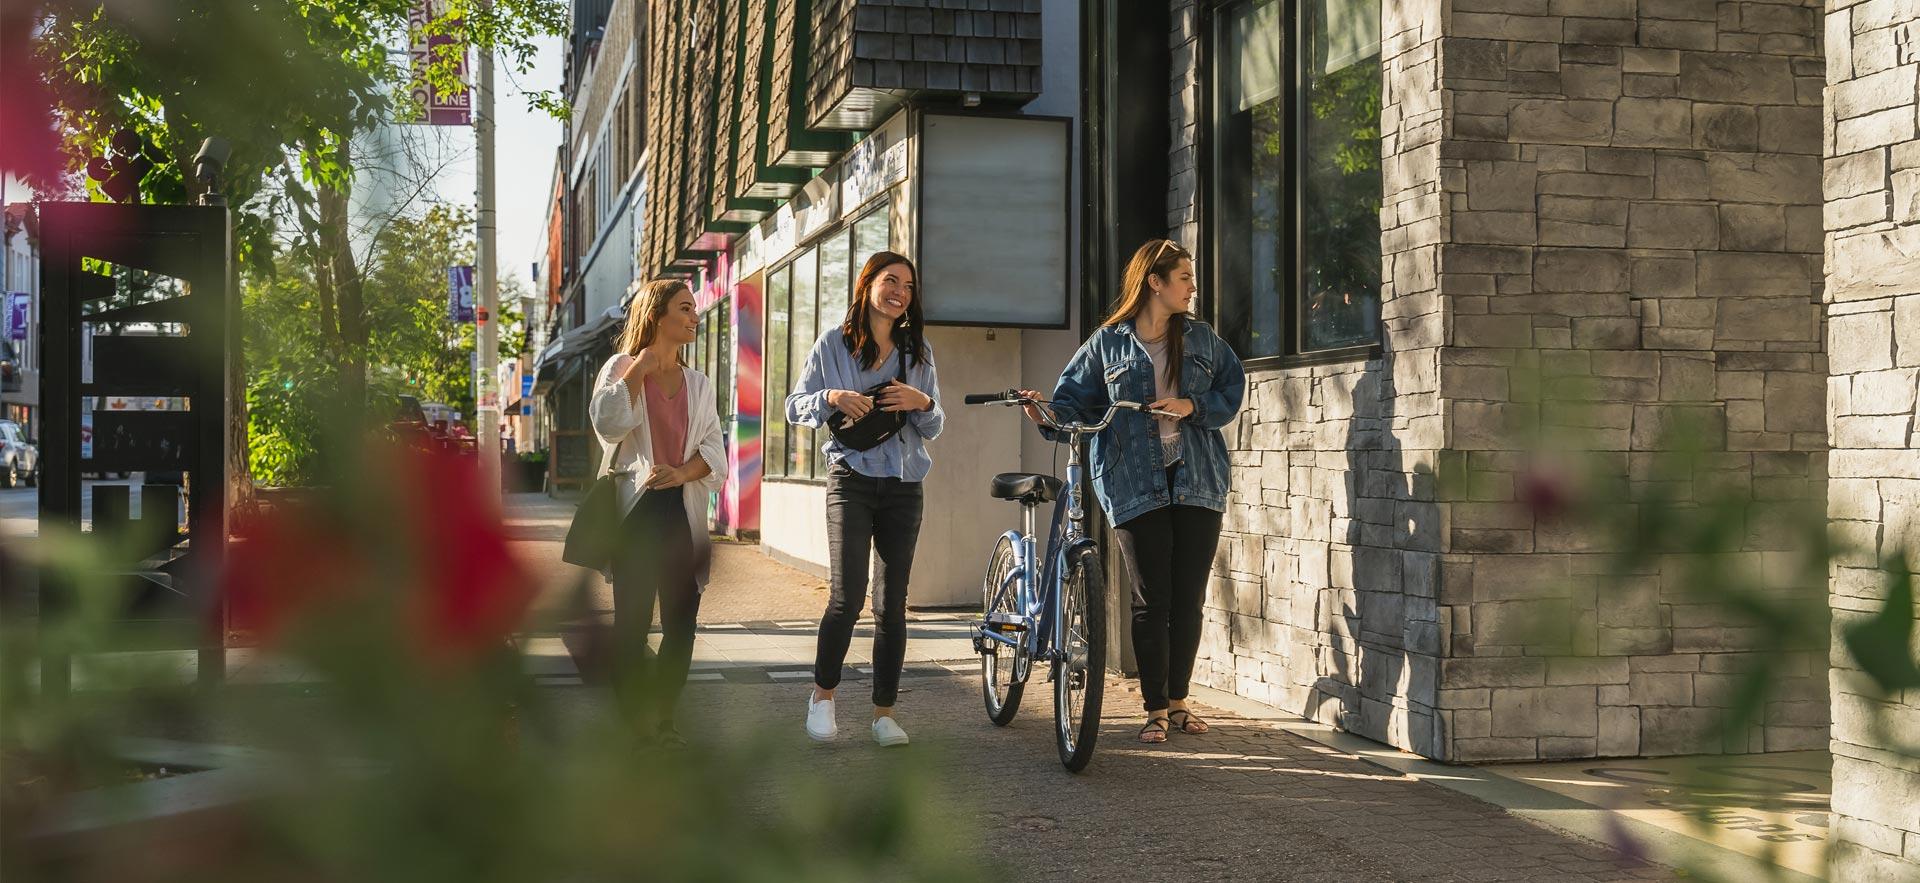 Three young women walking downtown.